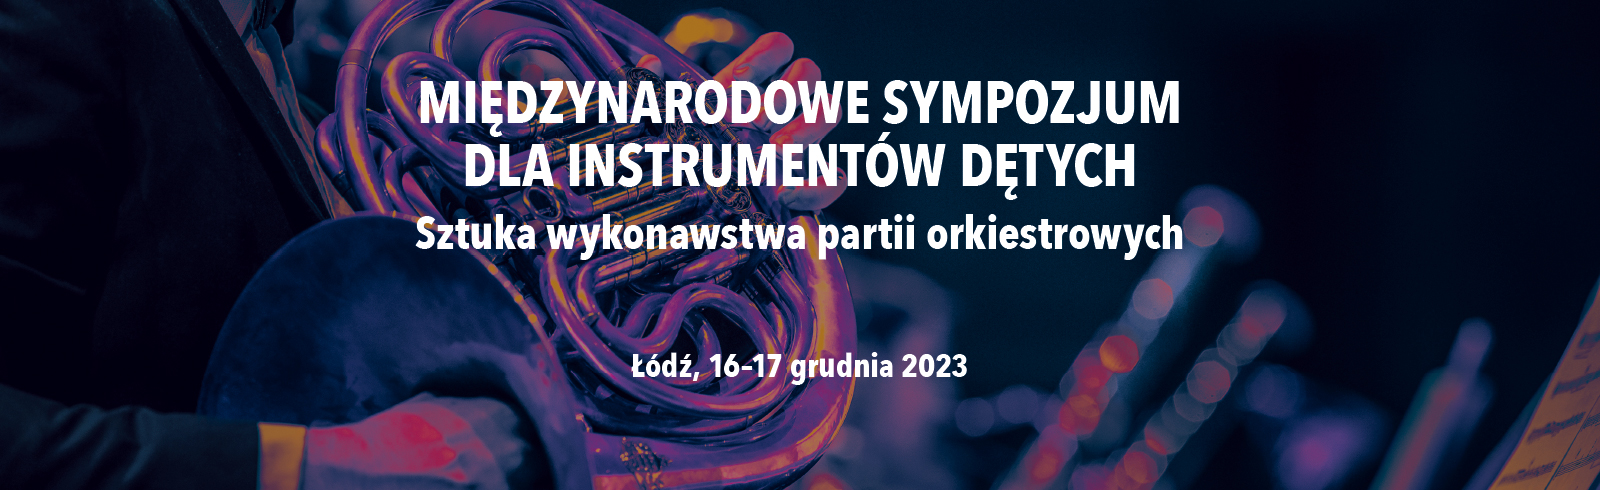 Międzynarodowe Sympozjum dla Instrumentów Dętych 2023-12-16